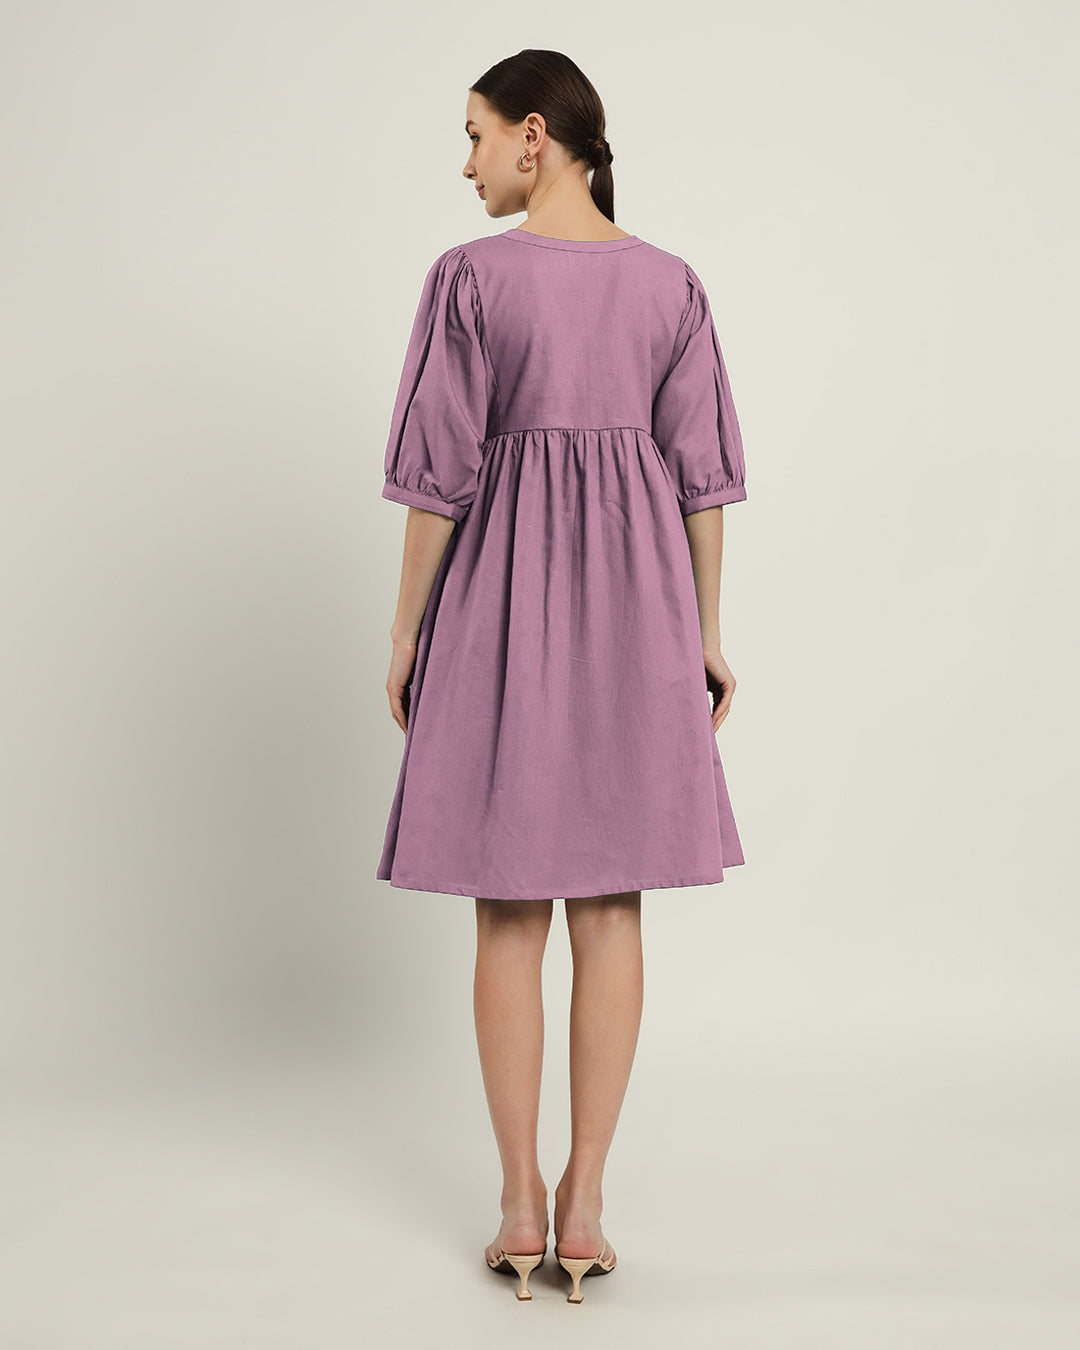 The Aira Purple Swirl Dress